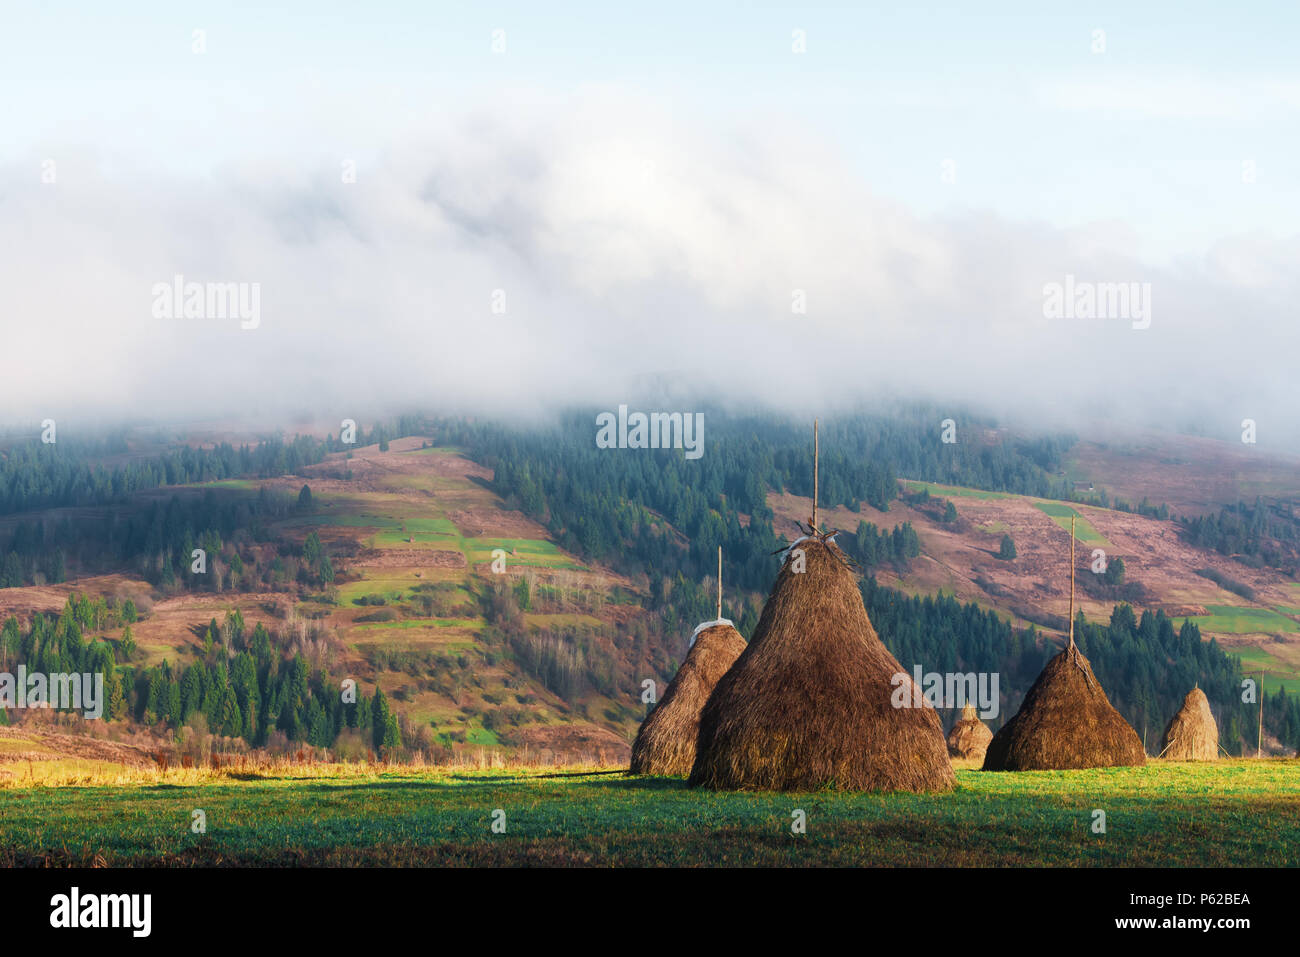 Incredibile scena rurale sulla valle di autunno Foto Stock